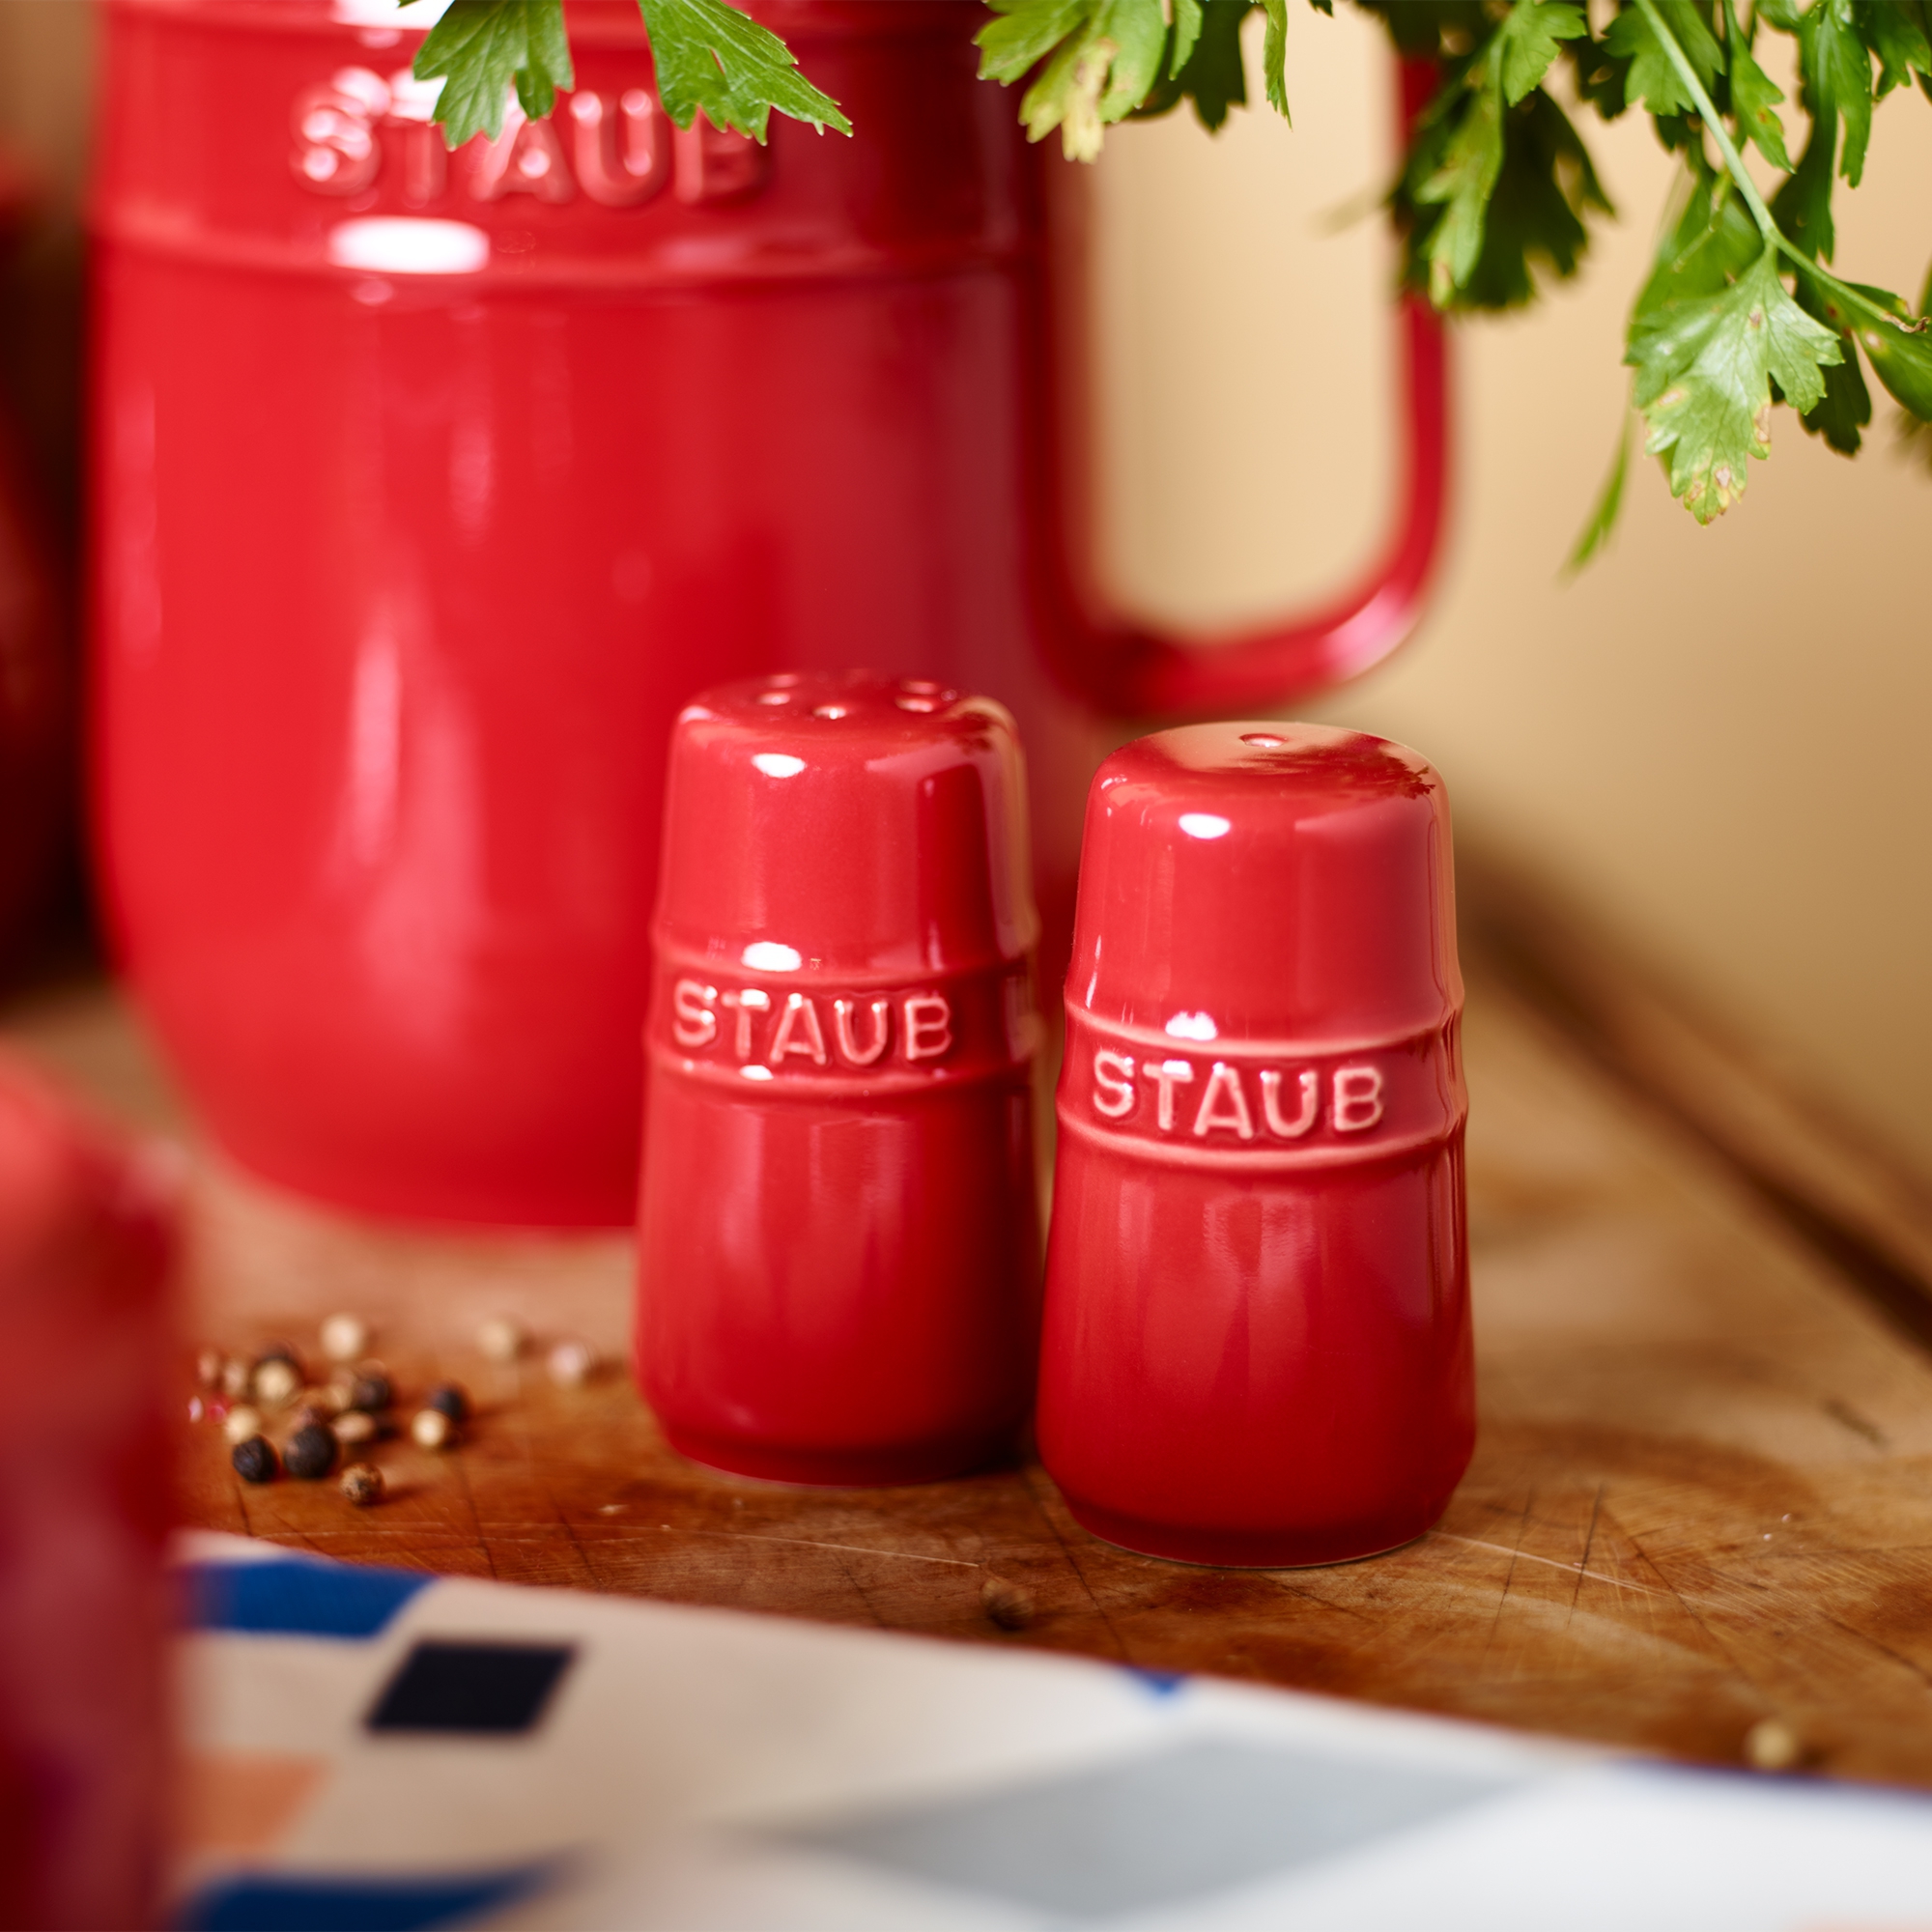 Staub - Ceramique salt & pepper shaker - set of 2 pieces